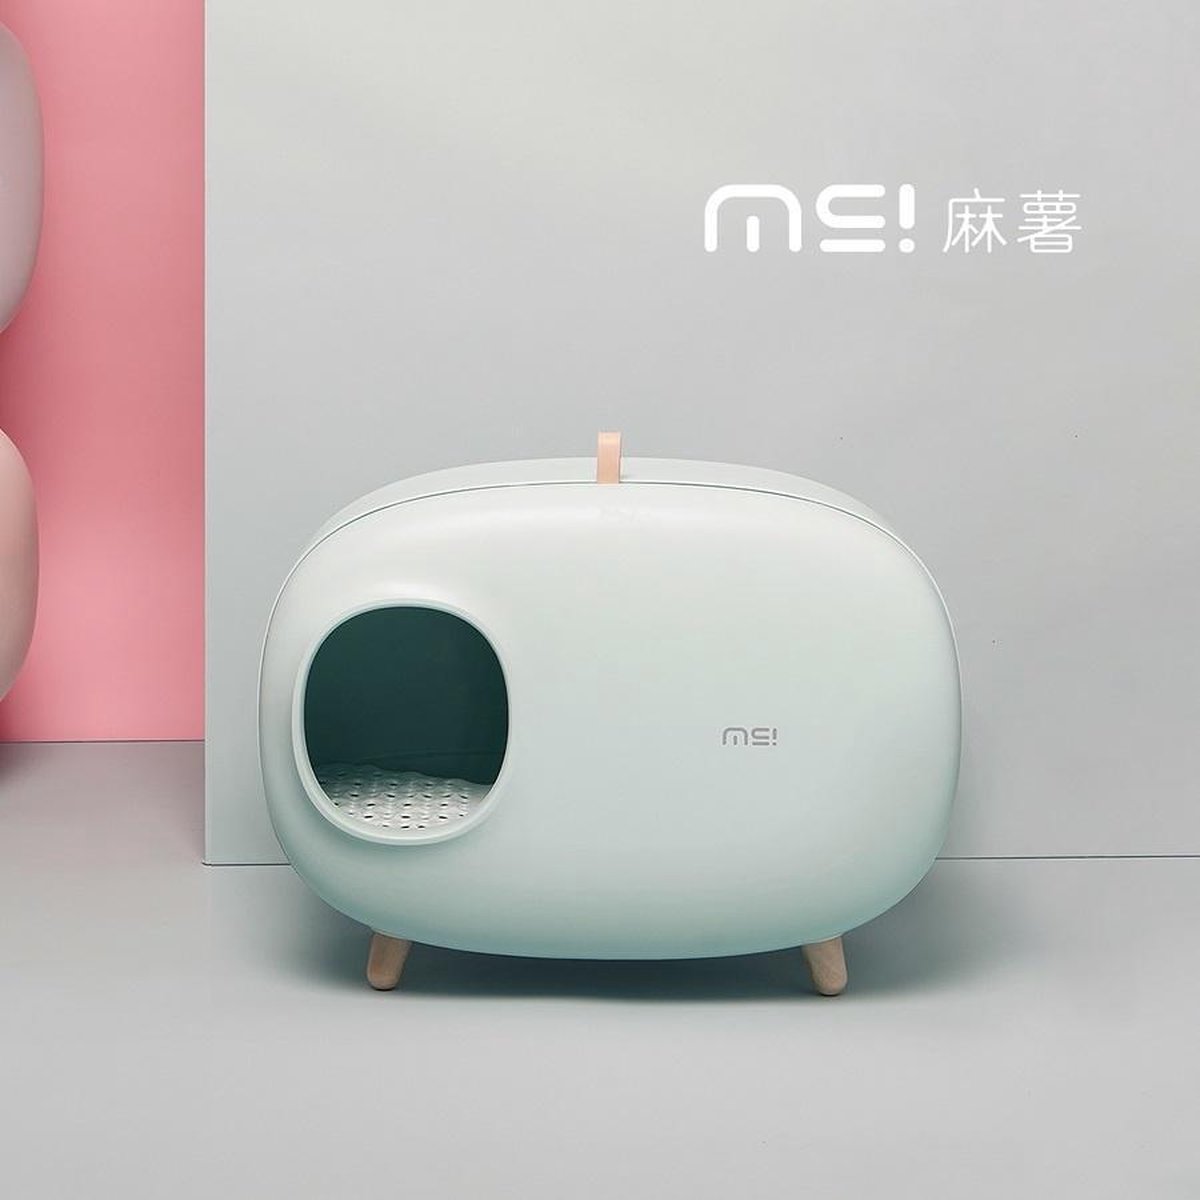 MS! Design Kattenbak - In 4 kleuren: Wit, Groen, Roze en Mosgroen - Makkelijk schoon te maken - Met Uitlooprooster - Inclusief Grindschepje - 60 x 38 x 45 cm - Groen